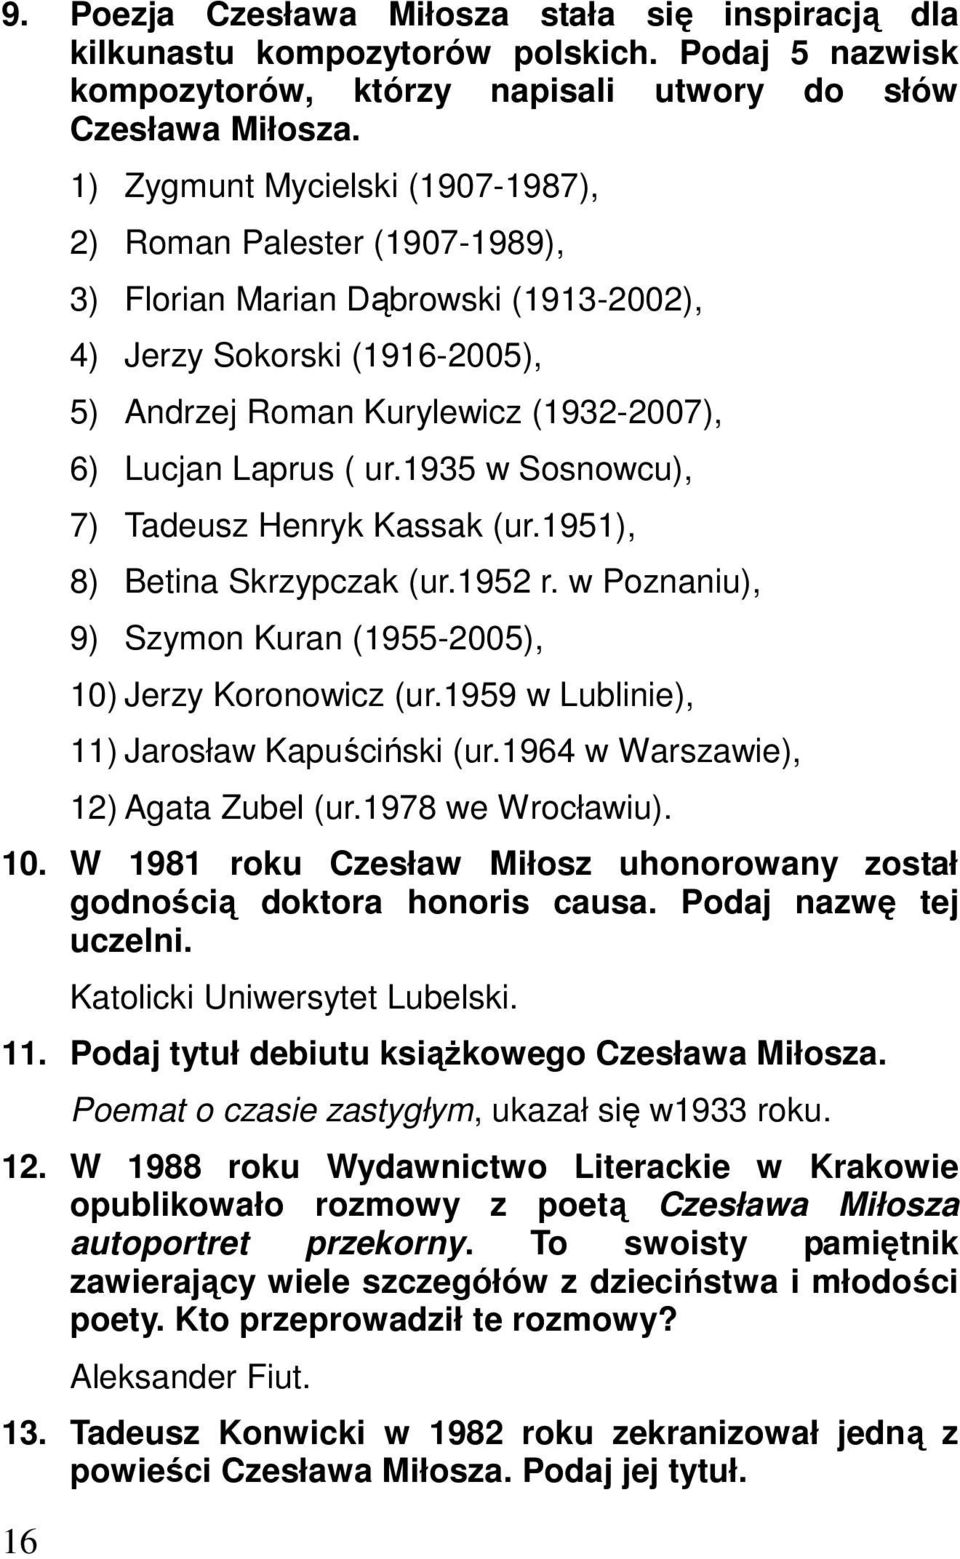 ur.1935 w Sosnowcu), 7) Tadeusz Henryk Kassak (ur.1951), 8) Betina Skrzypczak (ur.1952 r. w Poznaniu), 9) Szymon Kuran (1955-2005), 10) Jerzy Koronowicz (ur.